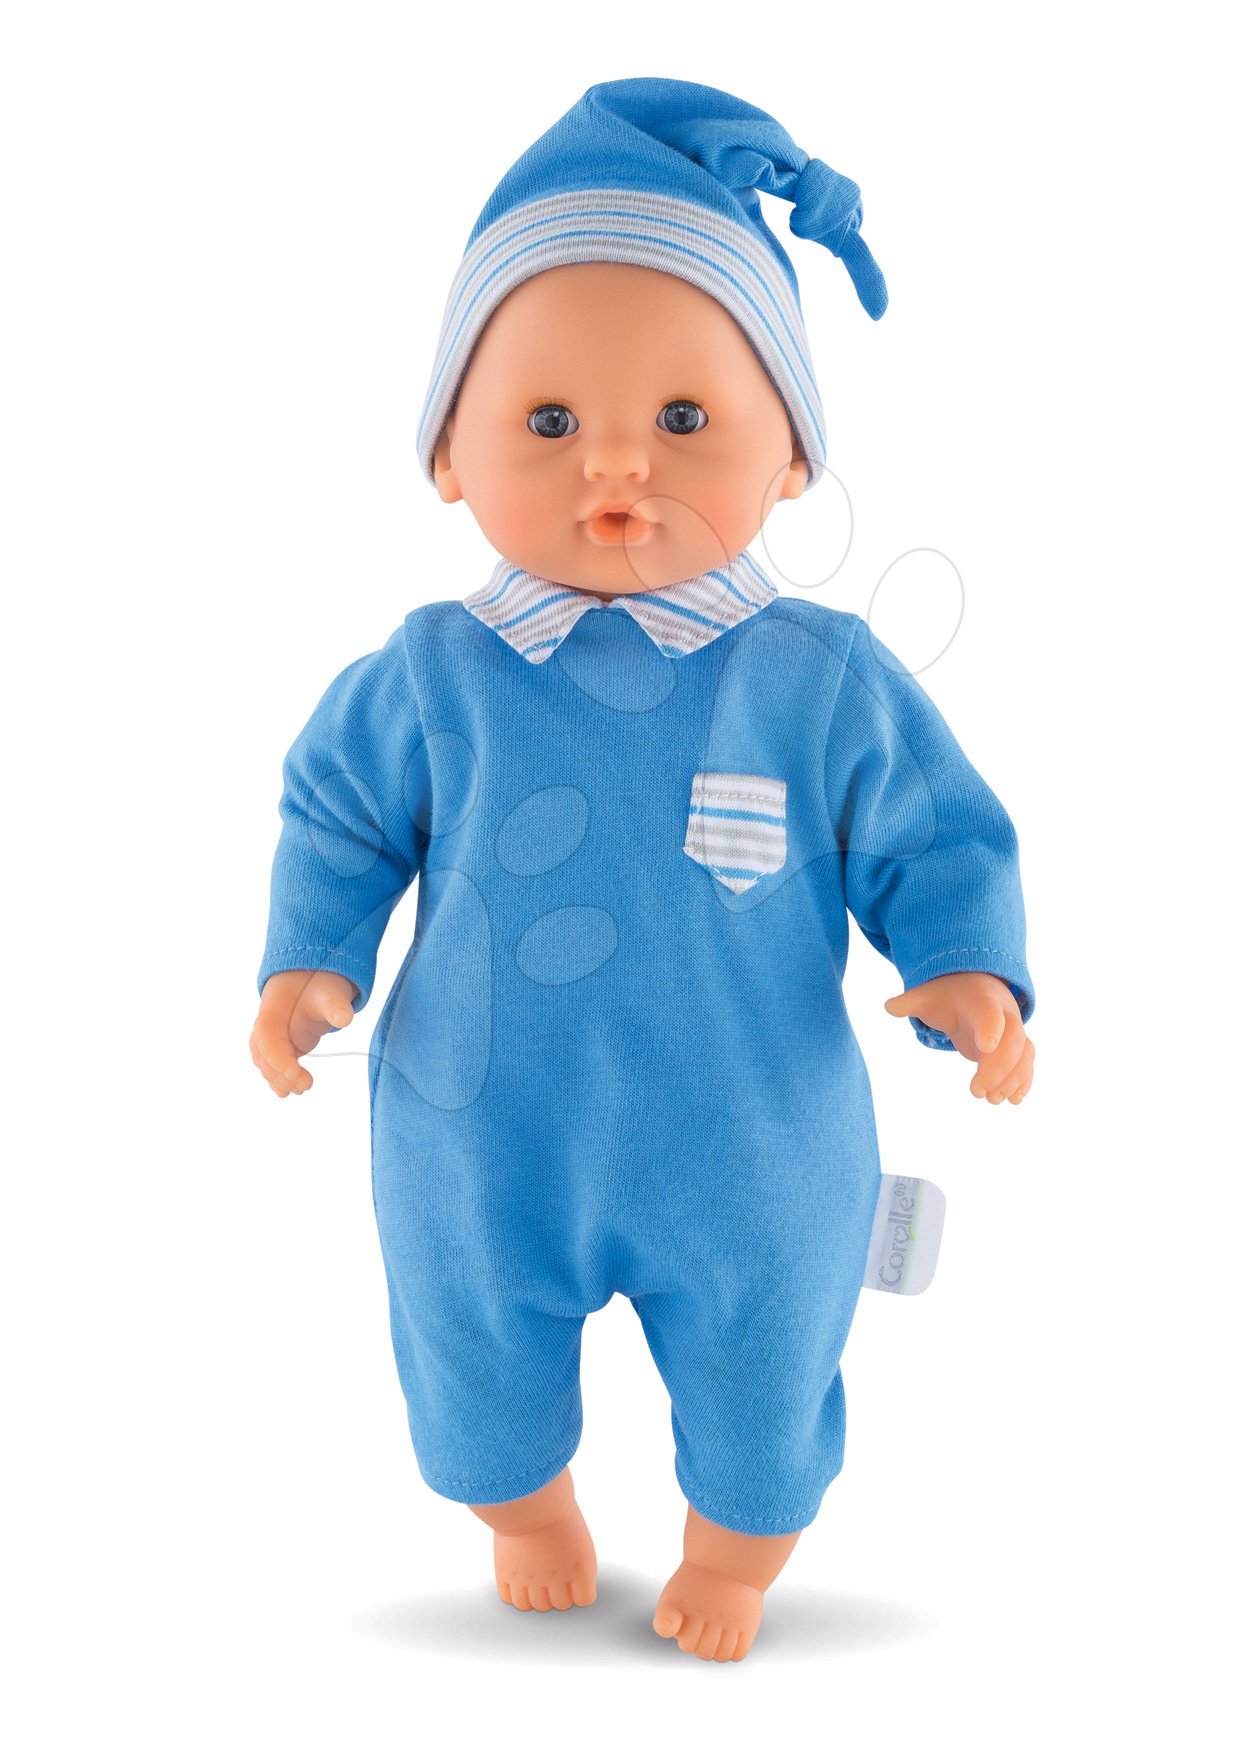 Játékbaba Bébé Calin Maël Corolle kék pislogó szemekkel és gyöngyöcskékkel 30 cm 18 hó-tól gyerek játék webáruház - játék rendelés online Játékbabák gyerekeknek | Játékbabák kislányoknak | Játékbabák 18 hónapos kortól